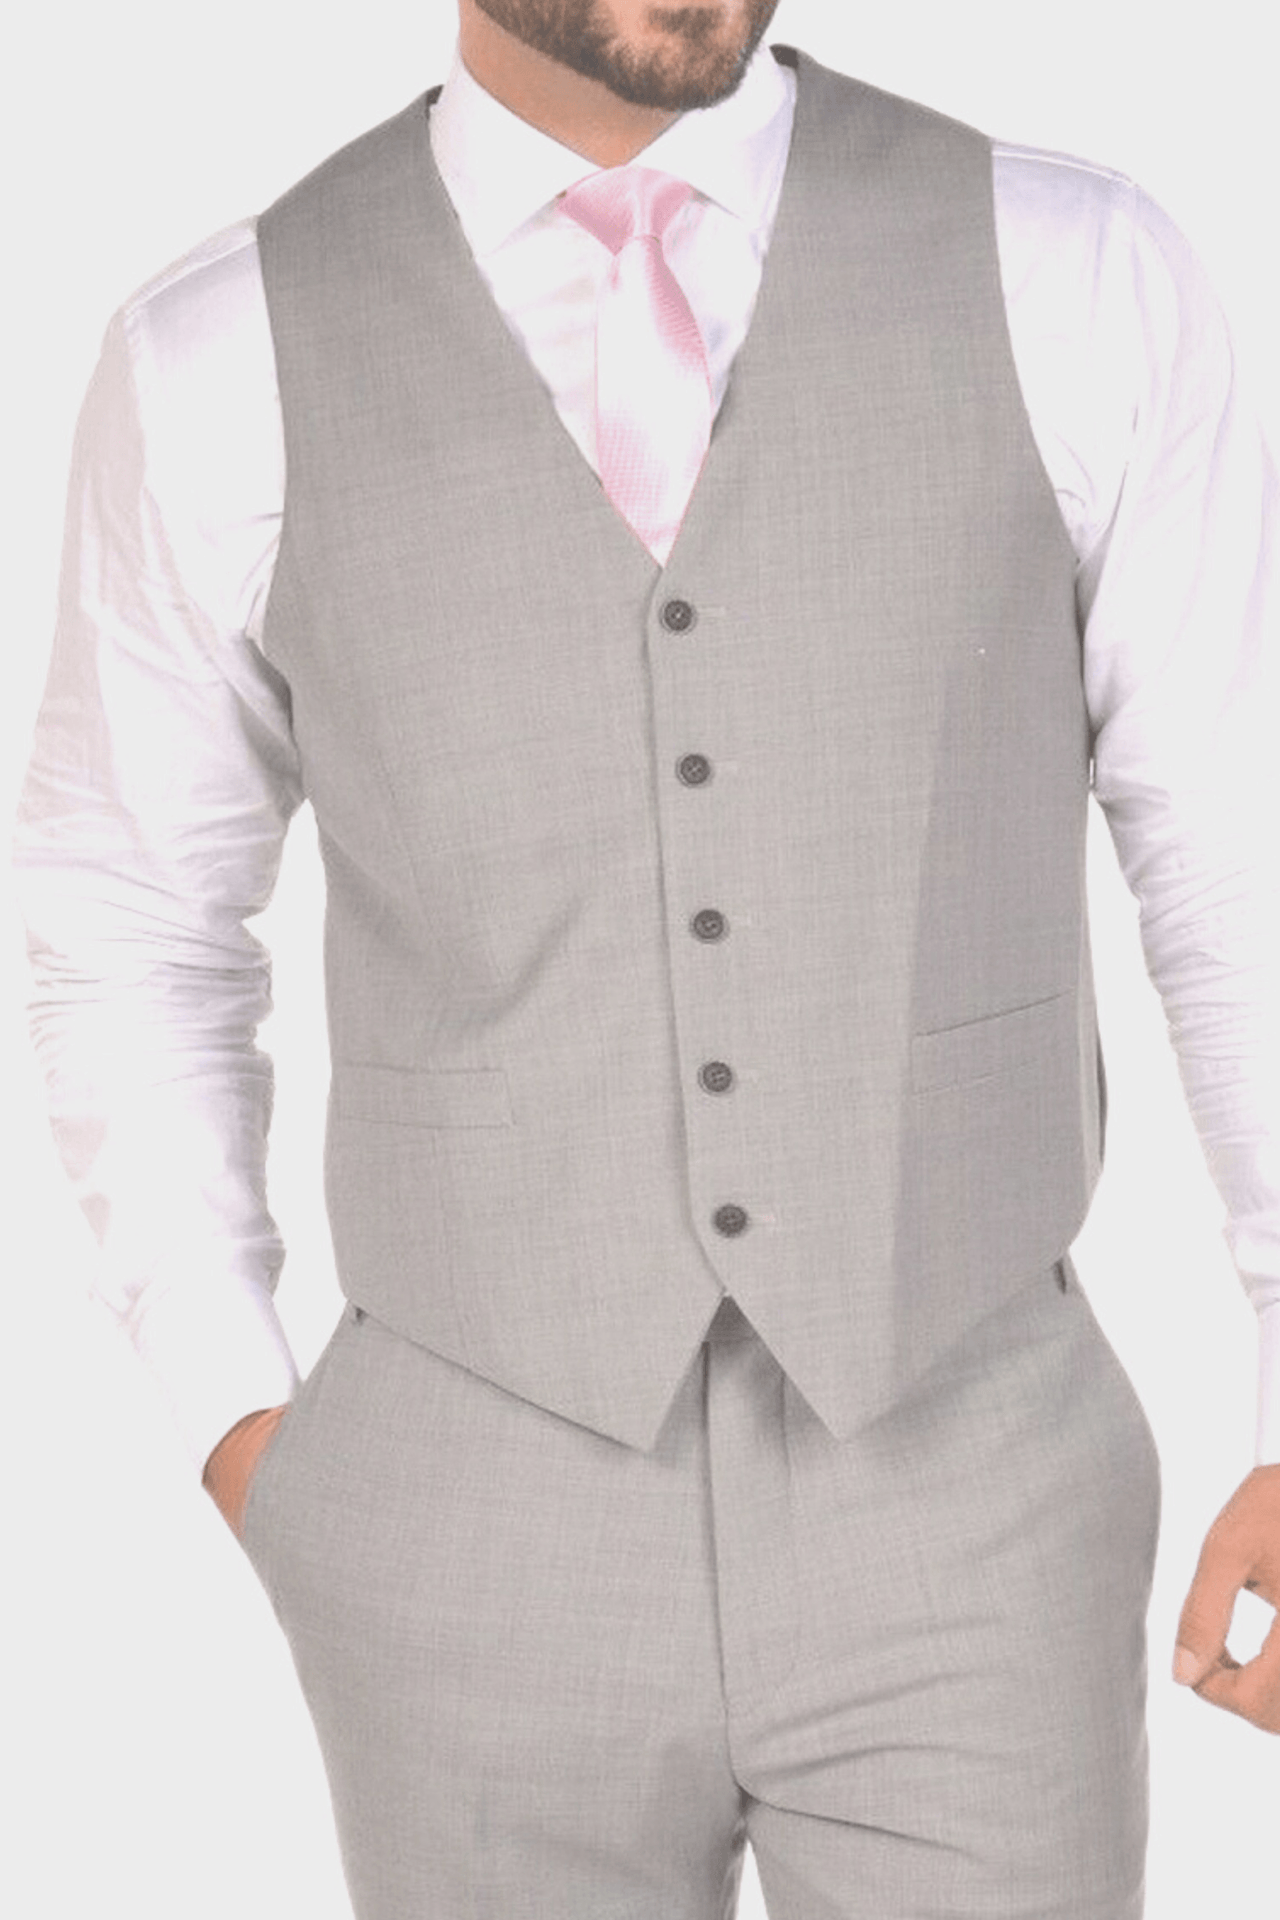 Rocchini gray men's formal suit - GIUSEPPE ROCCHINI - Pellecchia Store